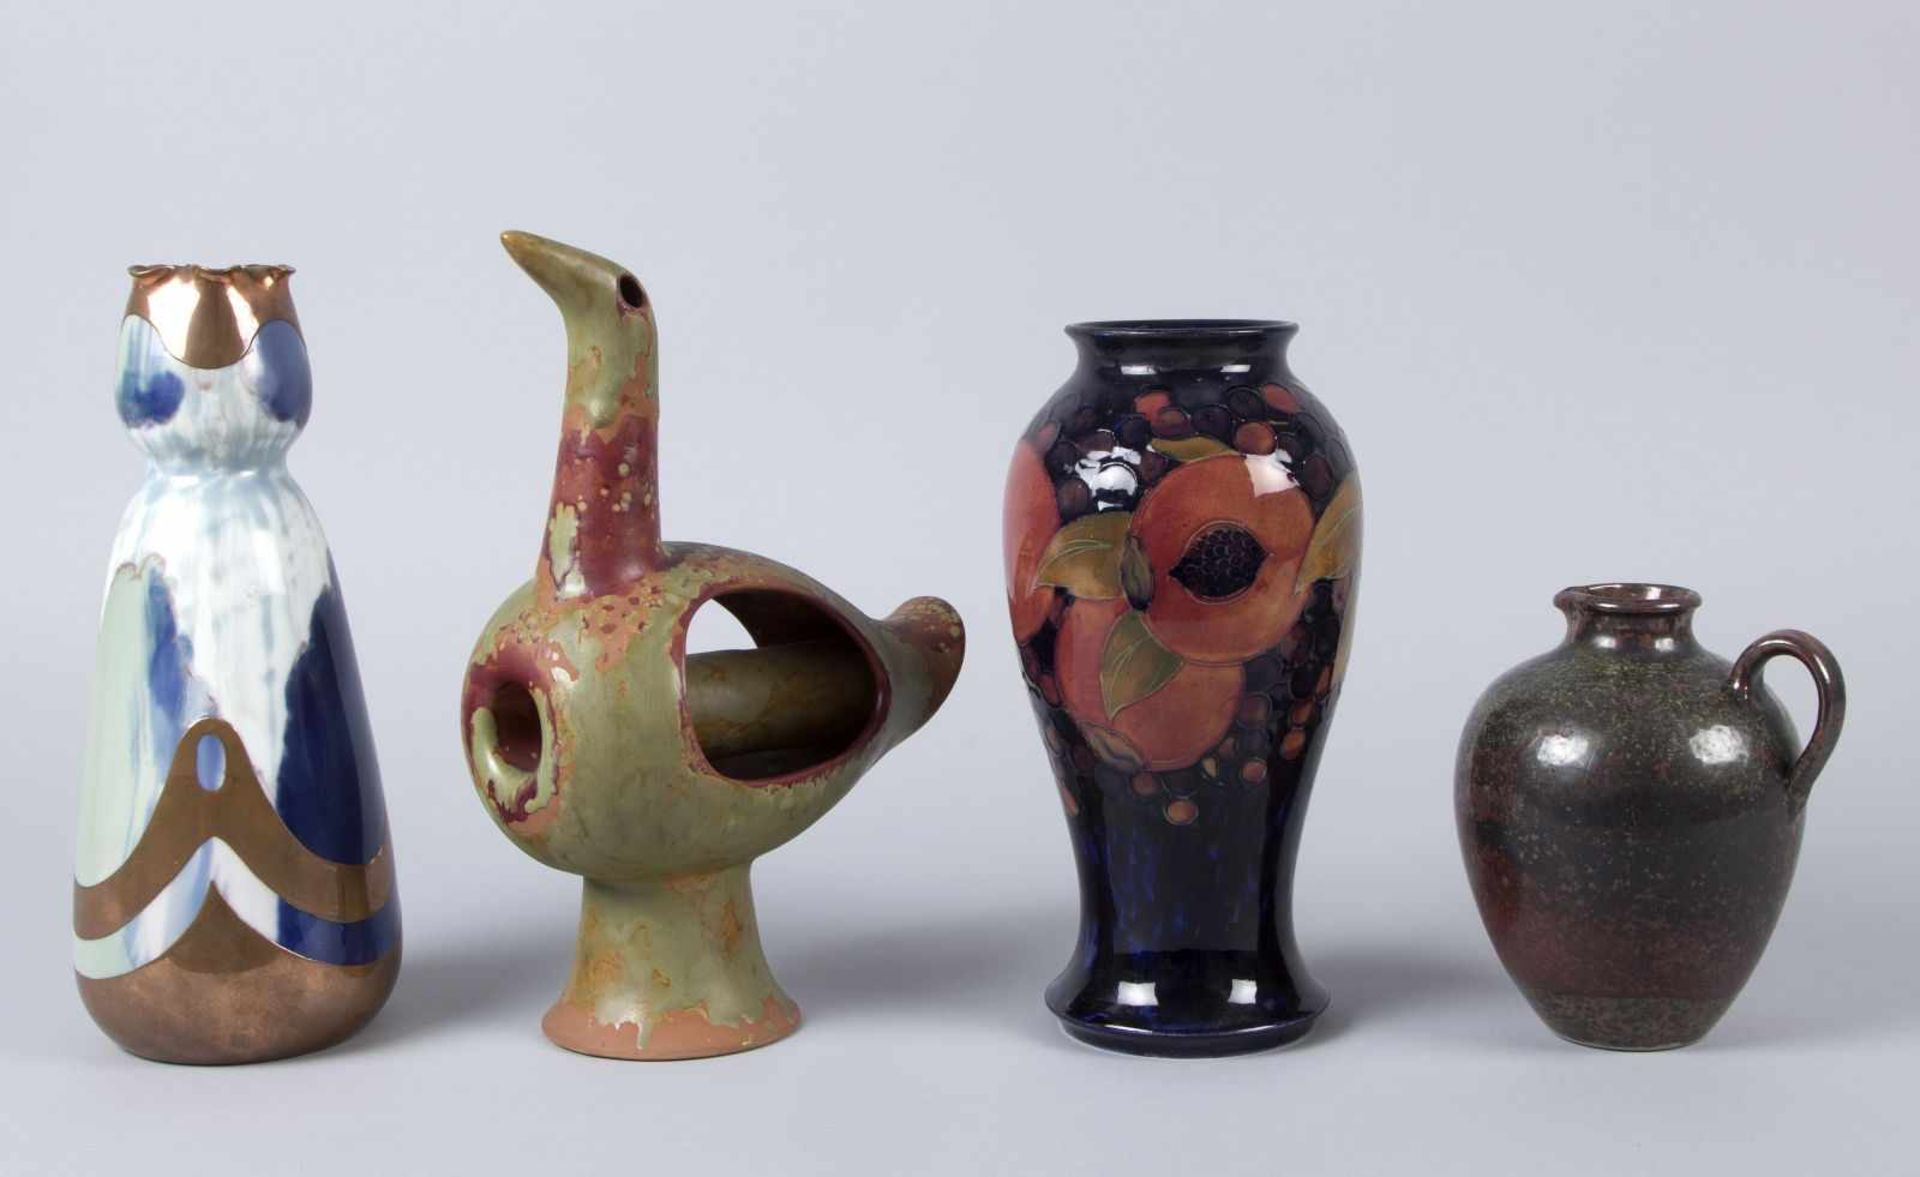 Zwei Vasen, Kännchen und VogelKeramik. Versch.farbige Glasuren. Versch. Formen und Dekore. Marke: